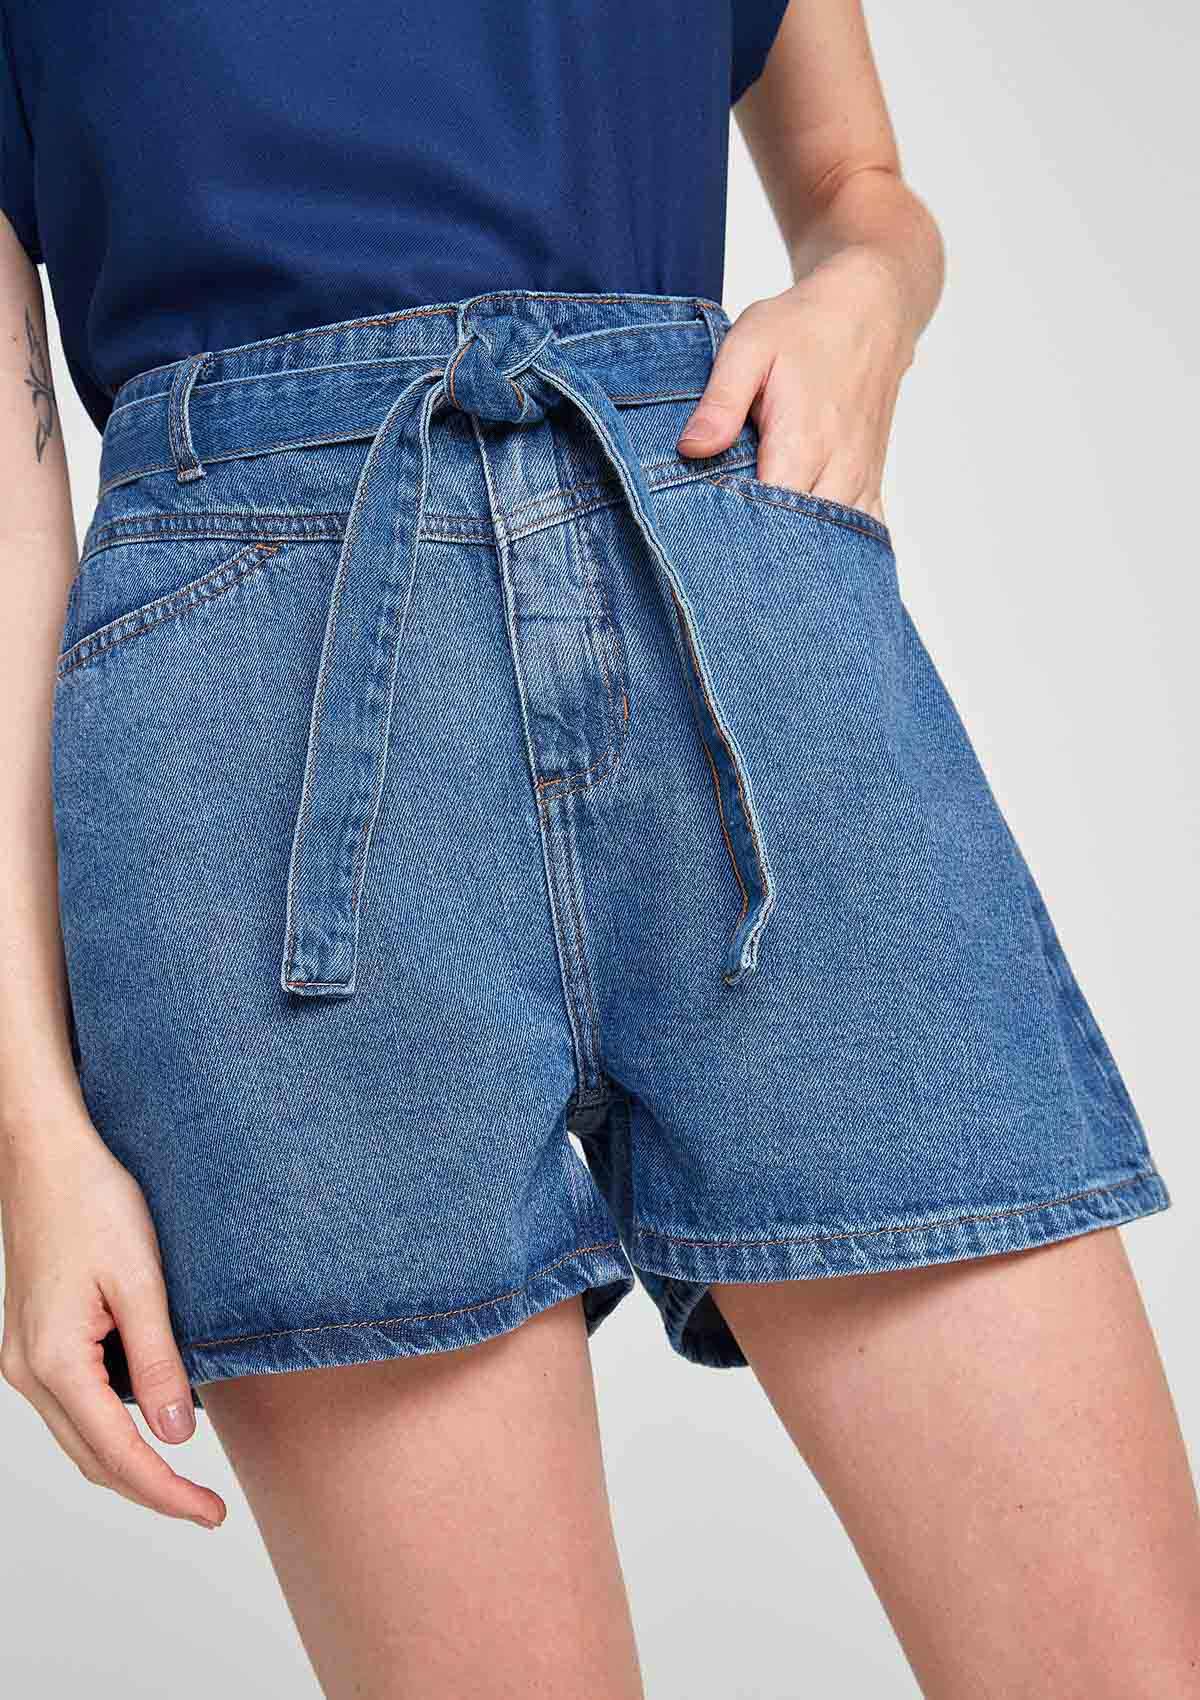 Shorts Feminino Cintura Alta Reto